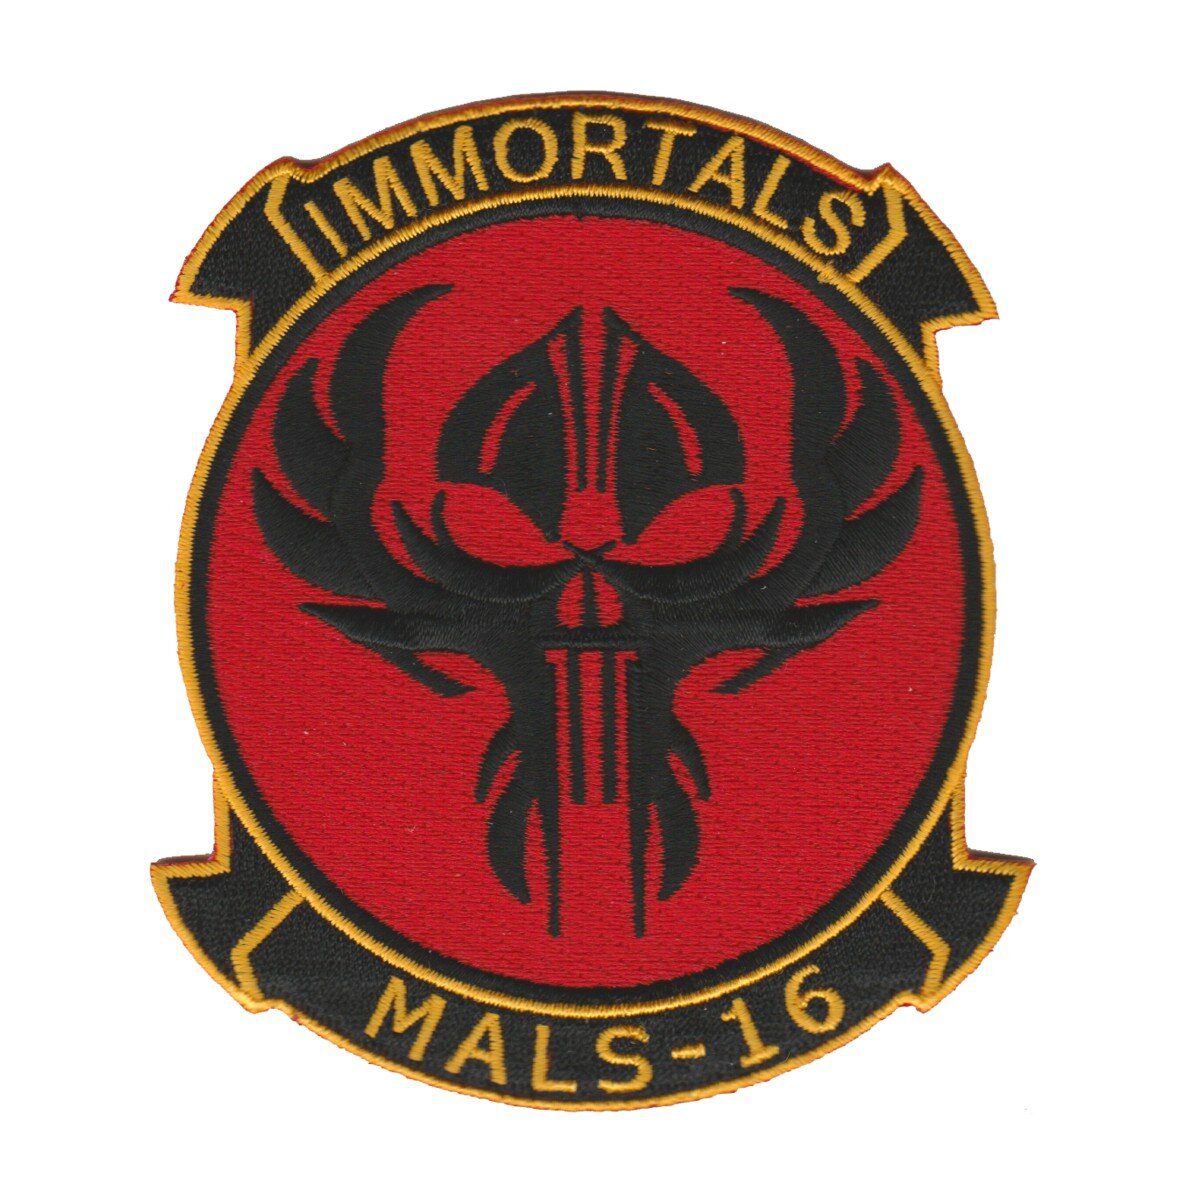 MALS-16 Immortals patch